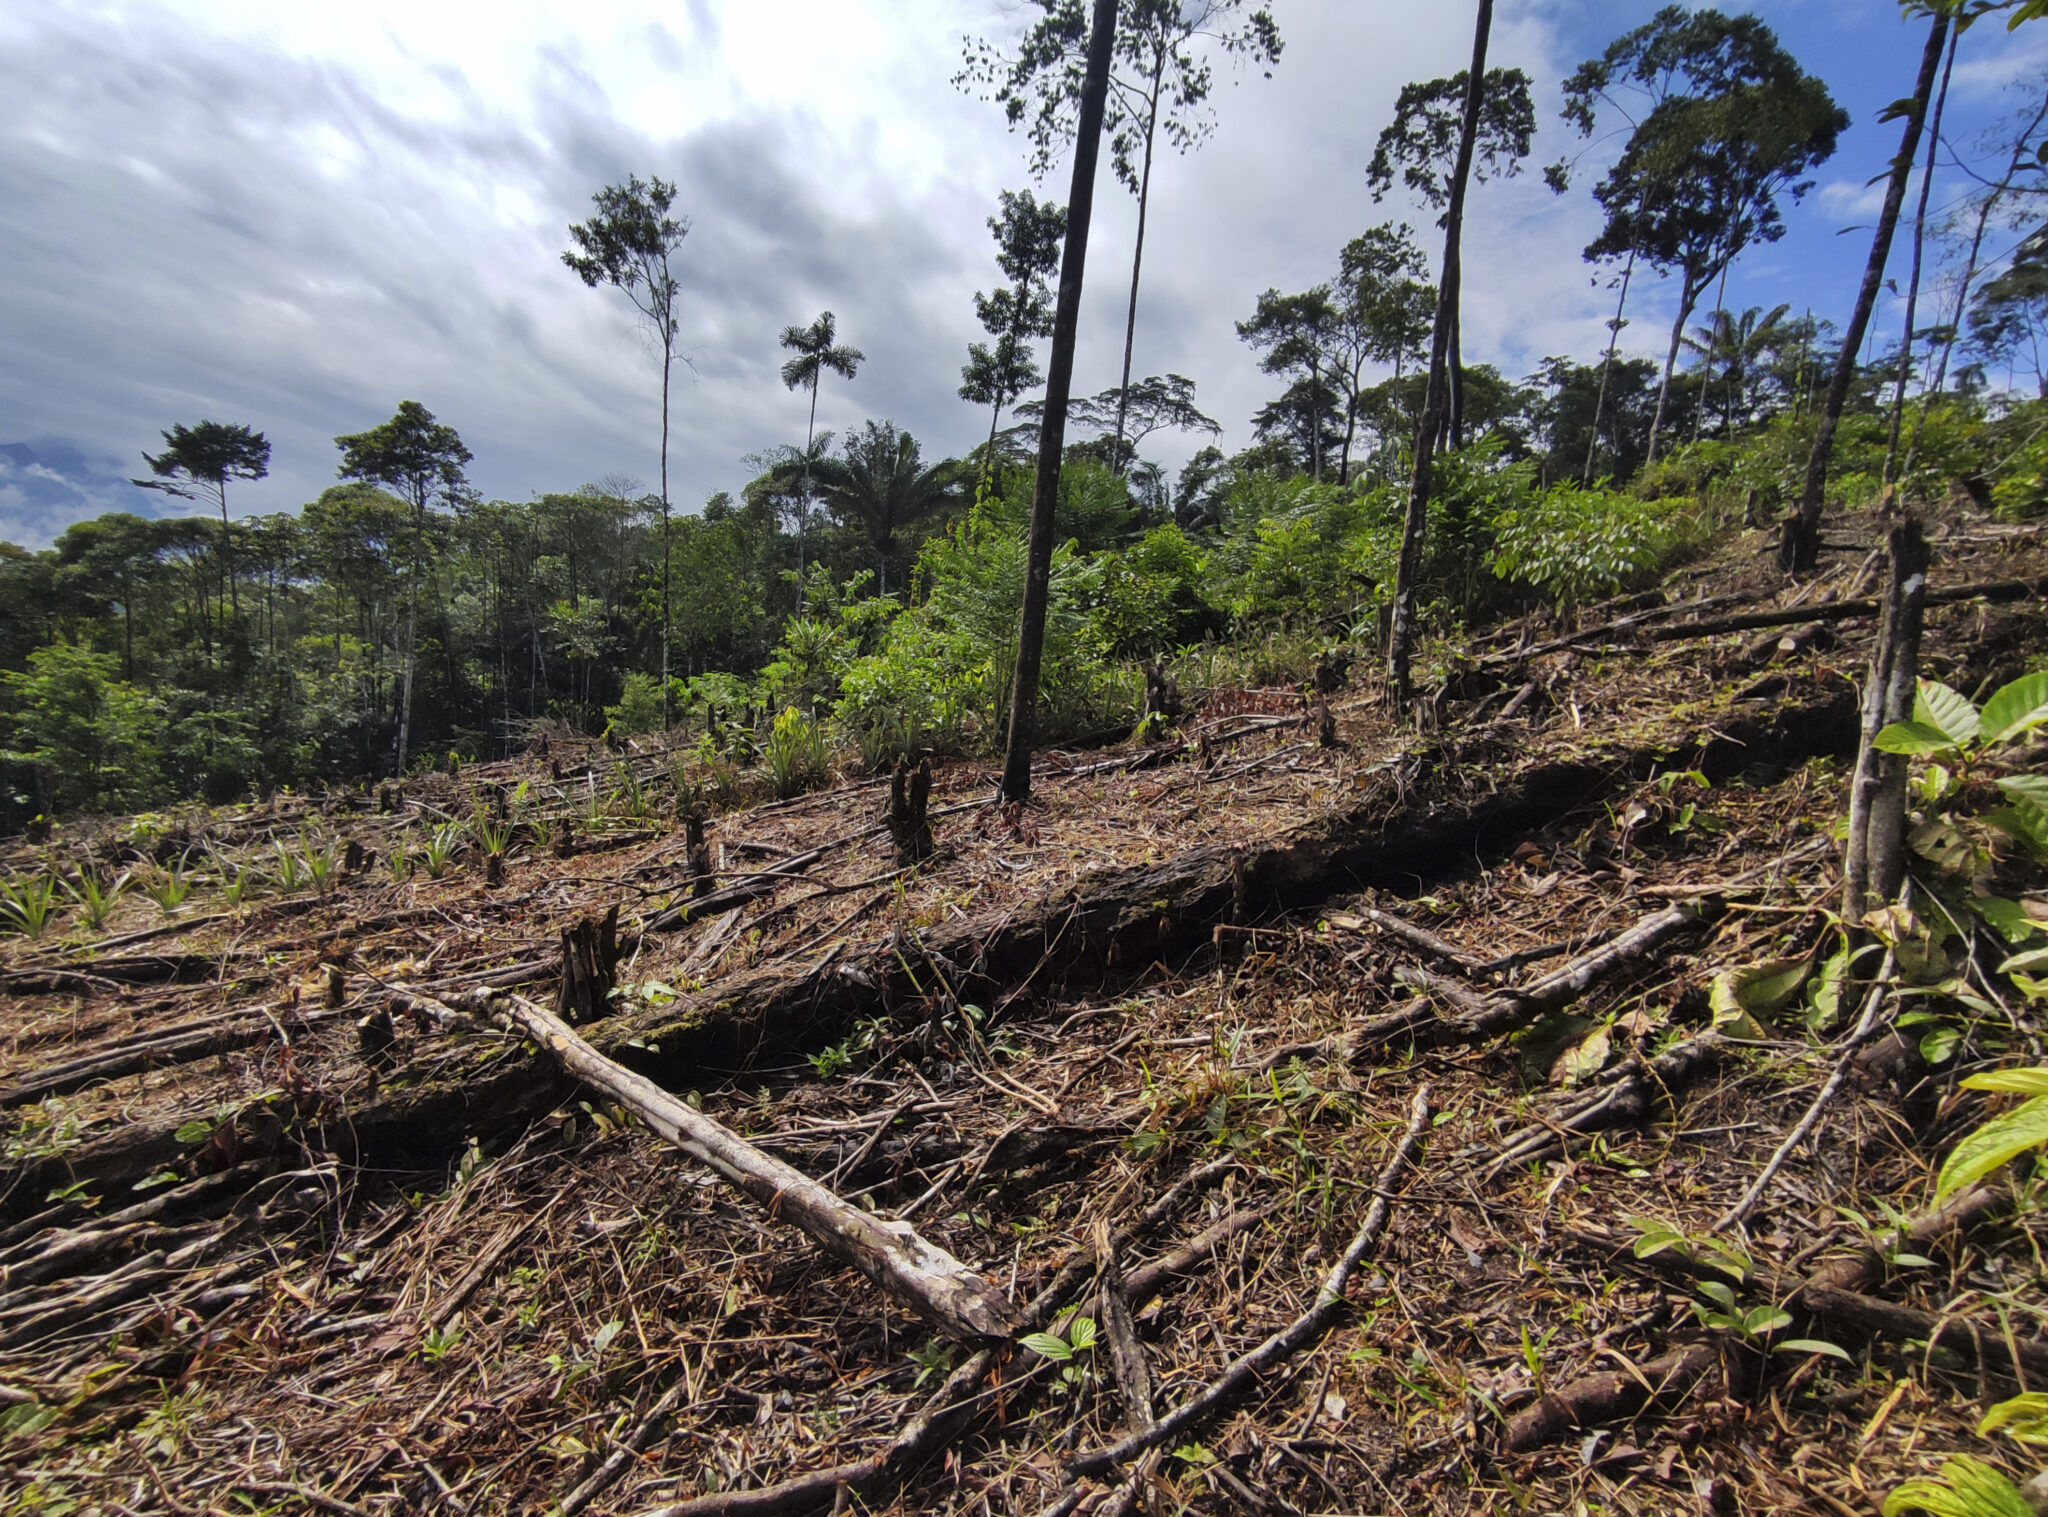 Fragmento de selva talada en el departamento del Putumayo, Colombia. Foto: Natalia Pedraza Bravo.